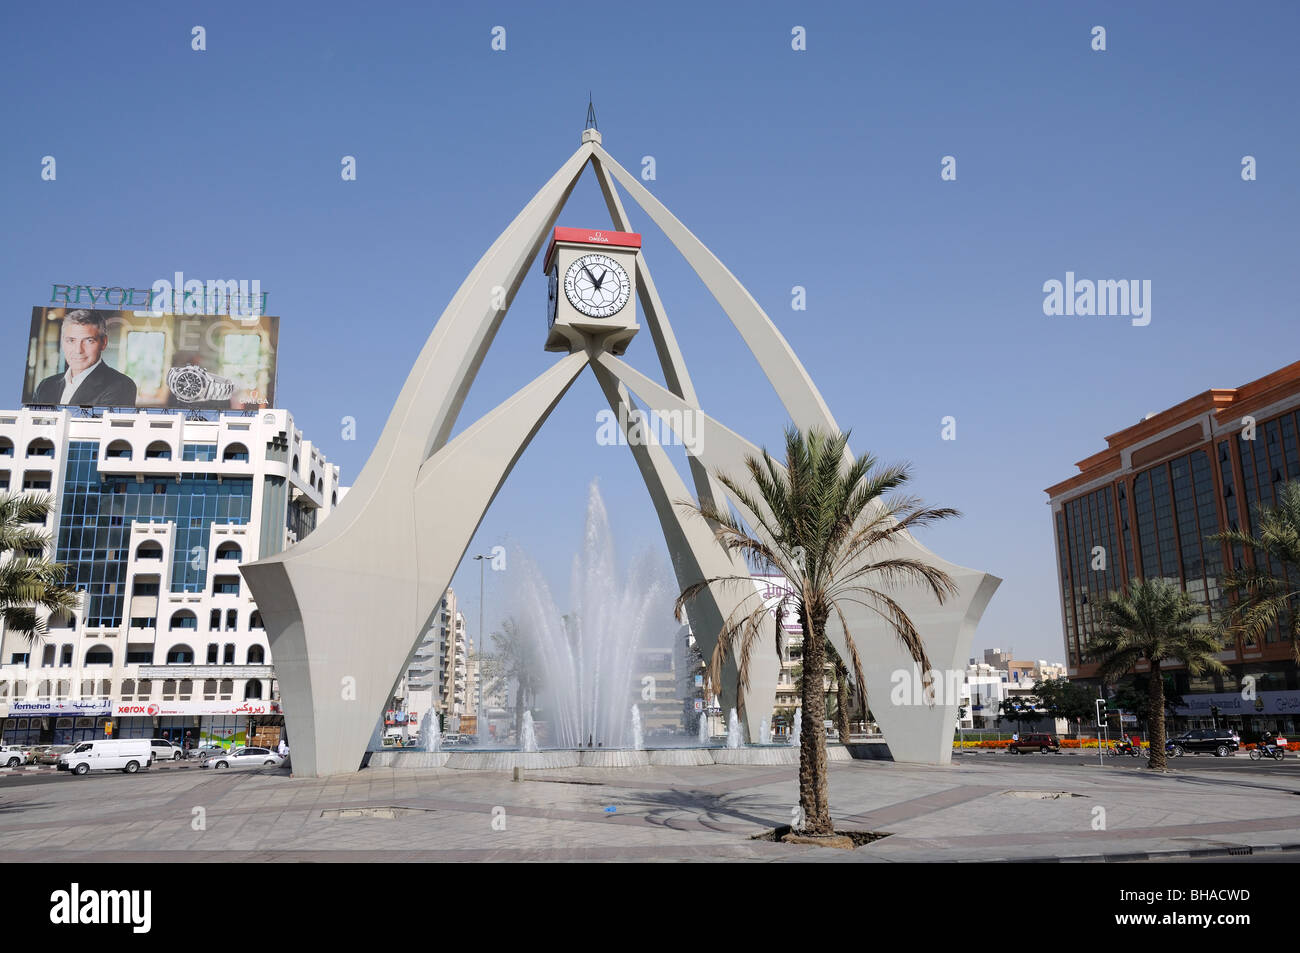 Orologio da torre rotonda in Dubai Emirati Arabi Uniti Foto Stock